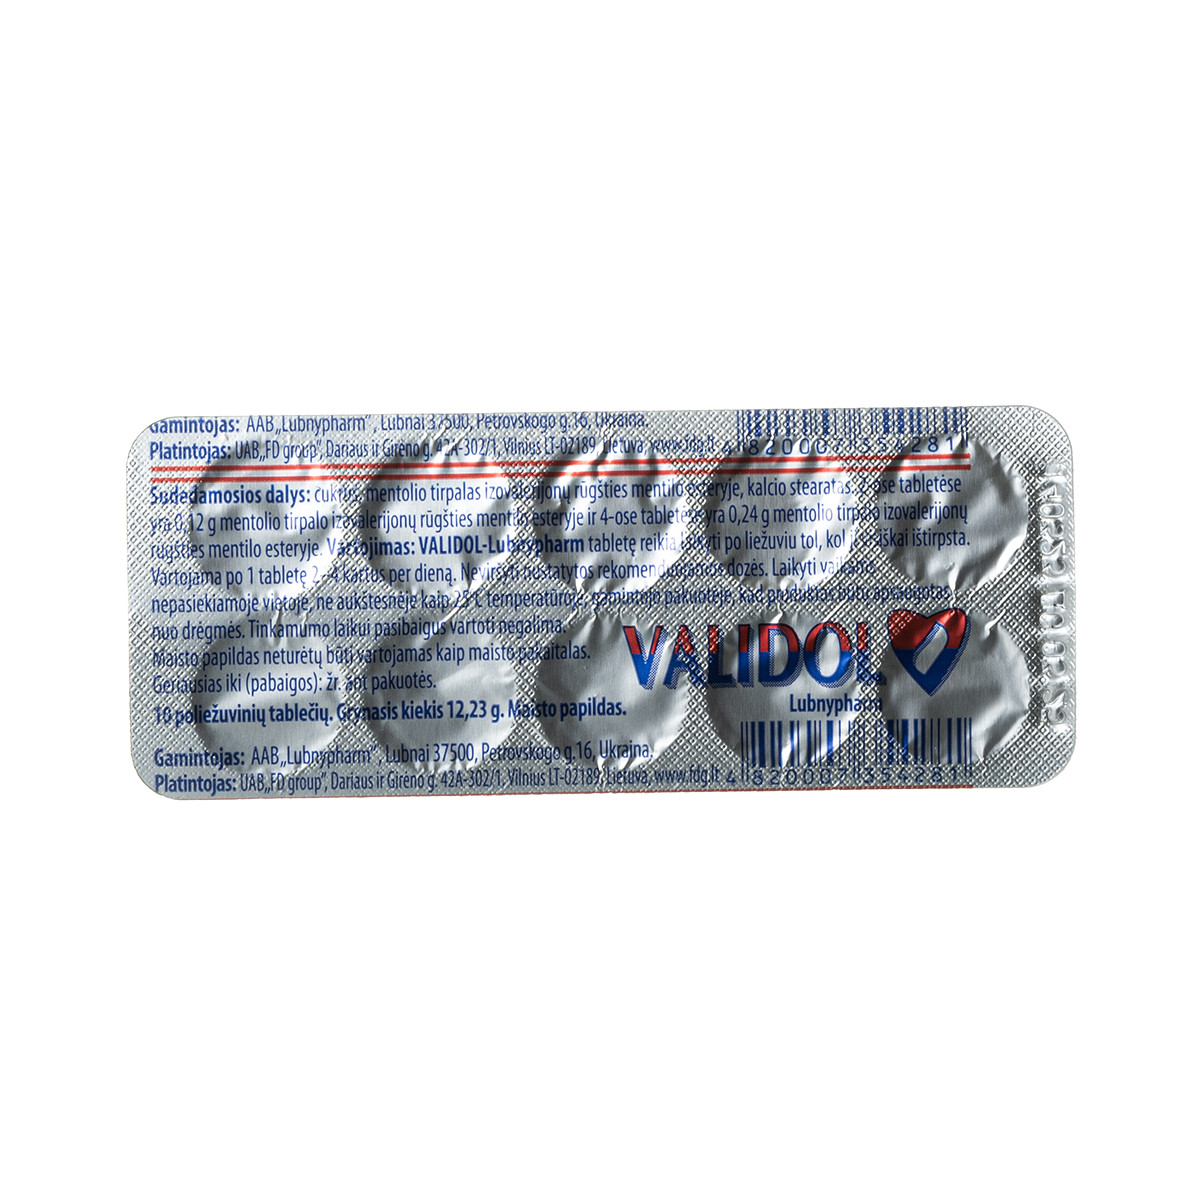 VALIDOLUM LUBNYPHARM, 60 mg, 10 tablečių